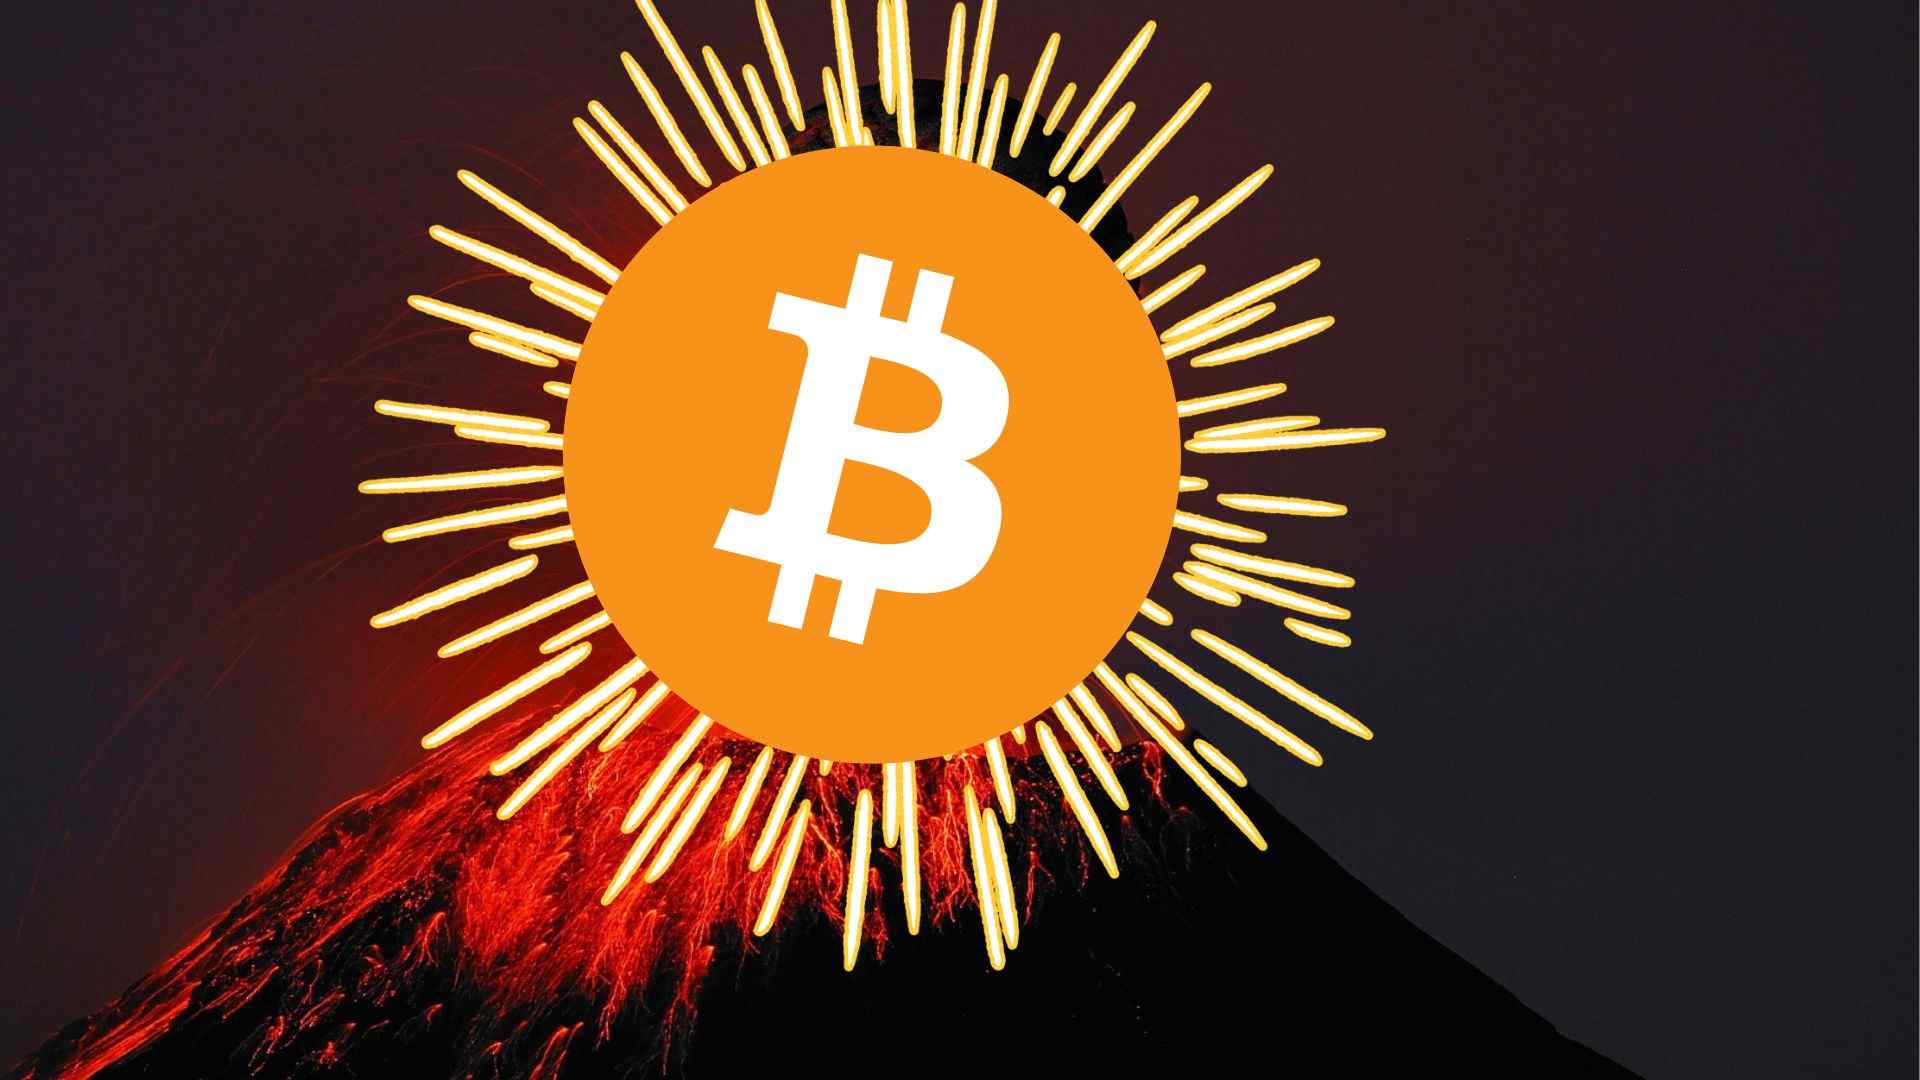 Bitcoin w złotej poświacie wypływający z wulkanu.